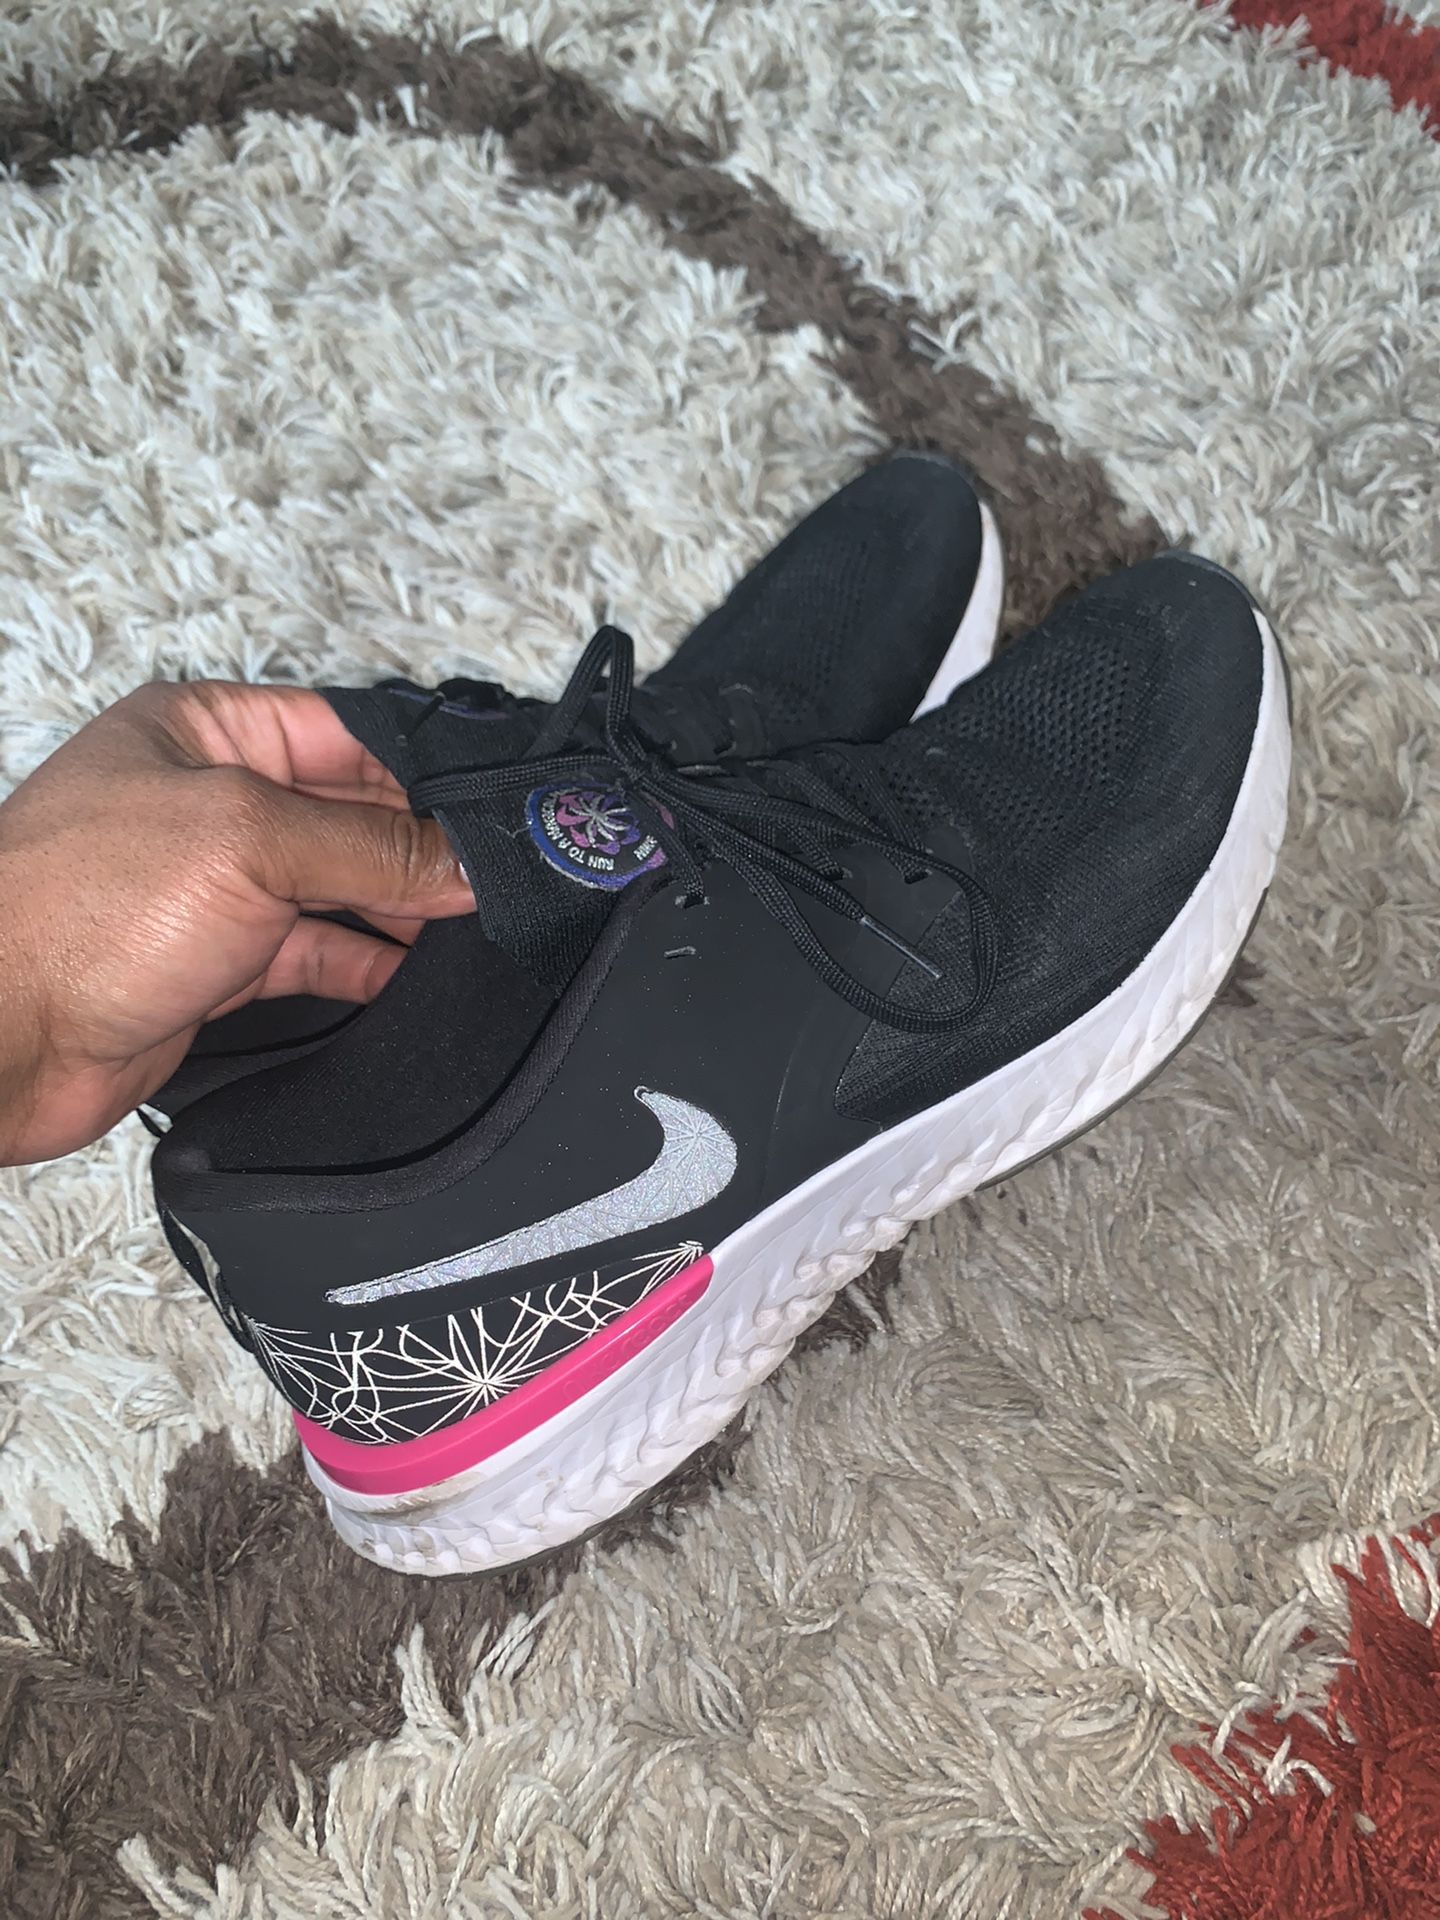 Women’s Nike React Shoes